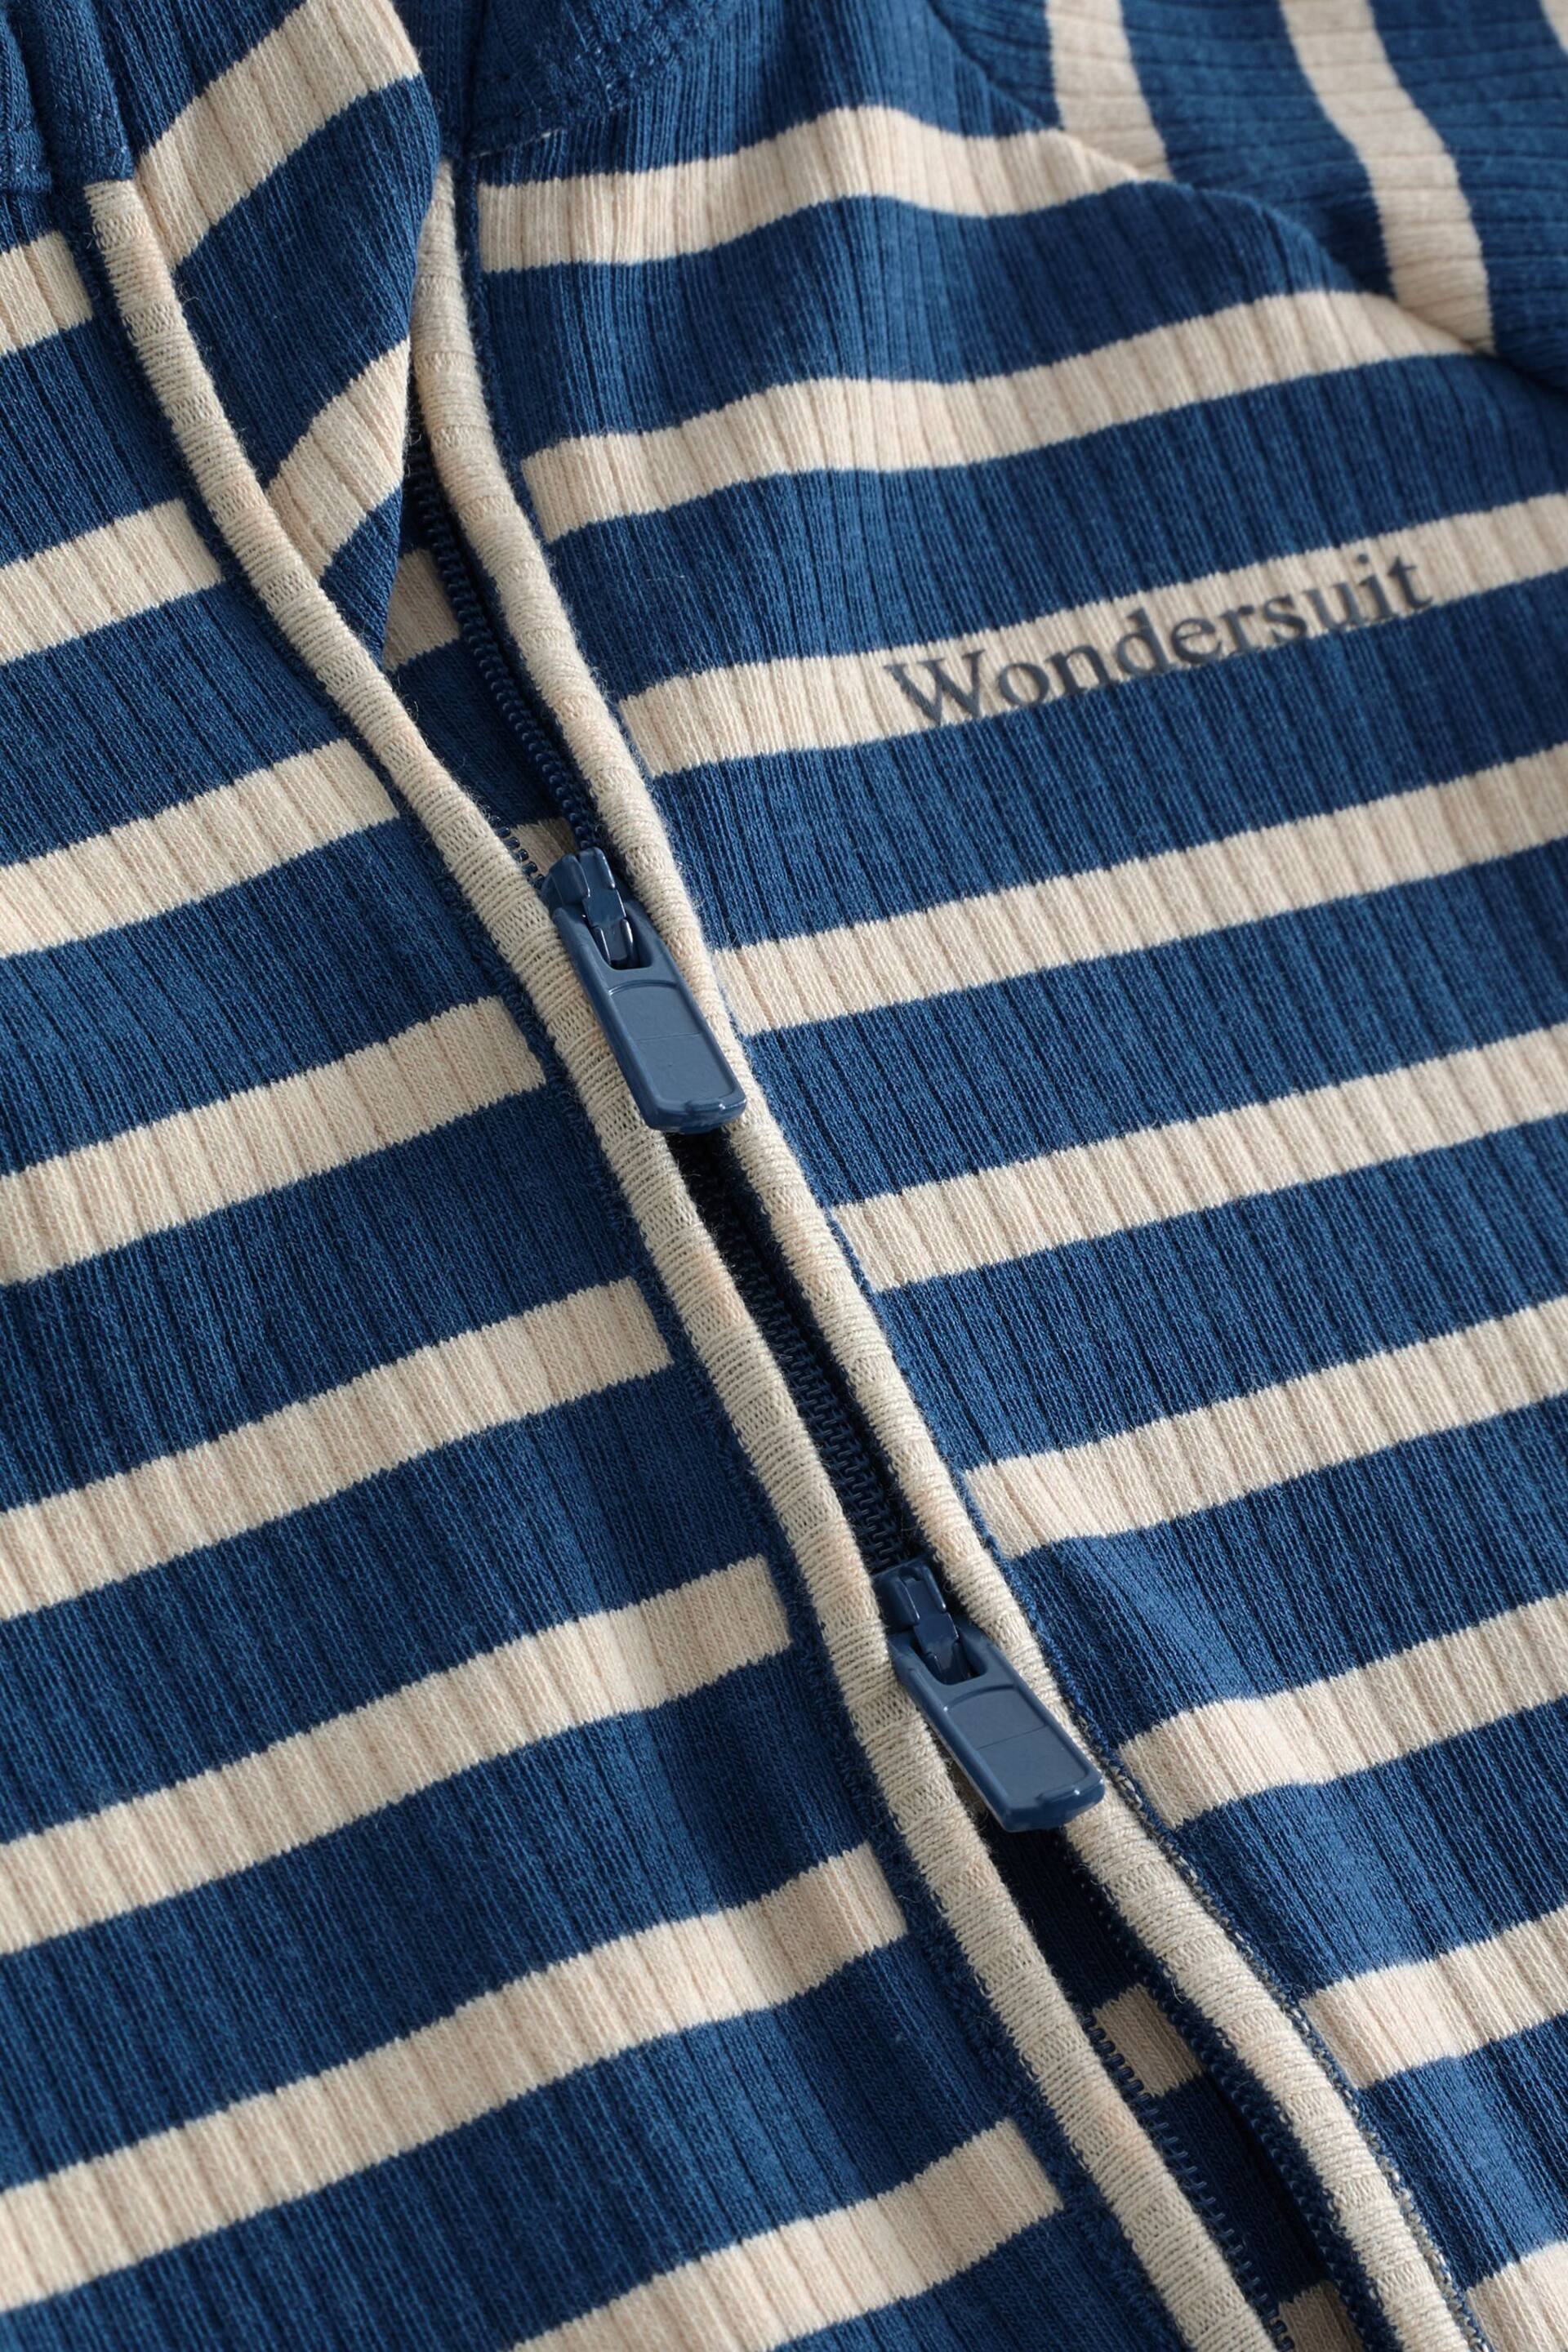 Bonds Blue Easy Stripe Zip Sleepsuit Wondersuit - Image 4 of 4